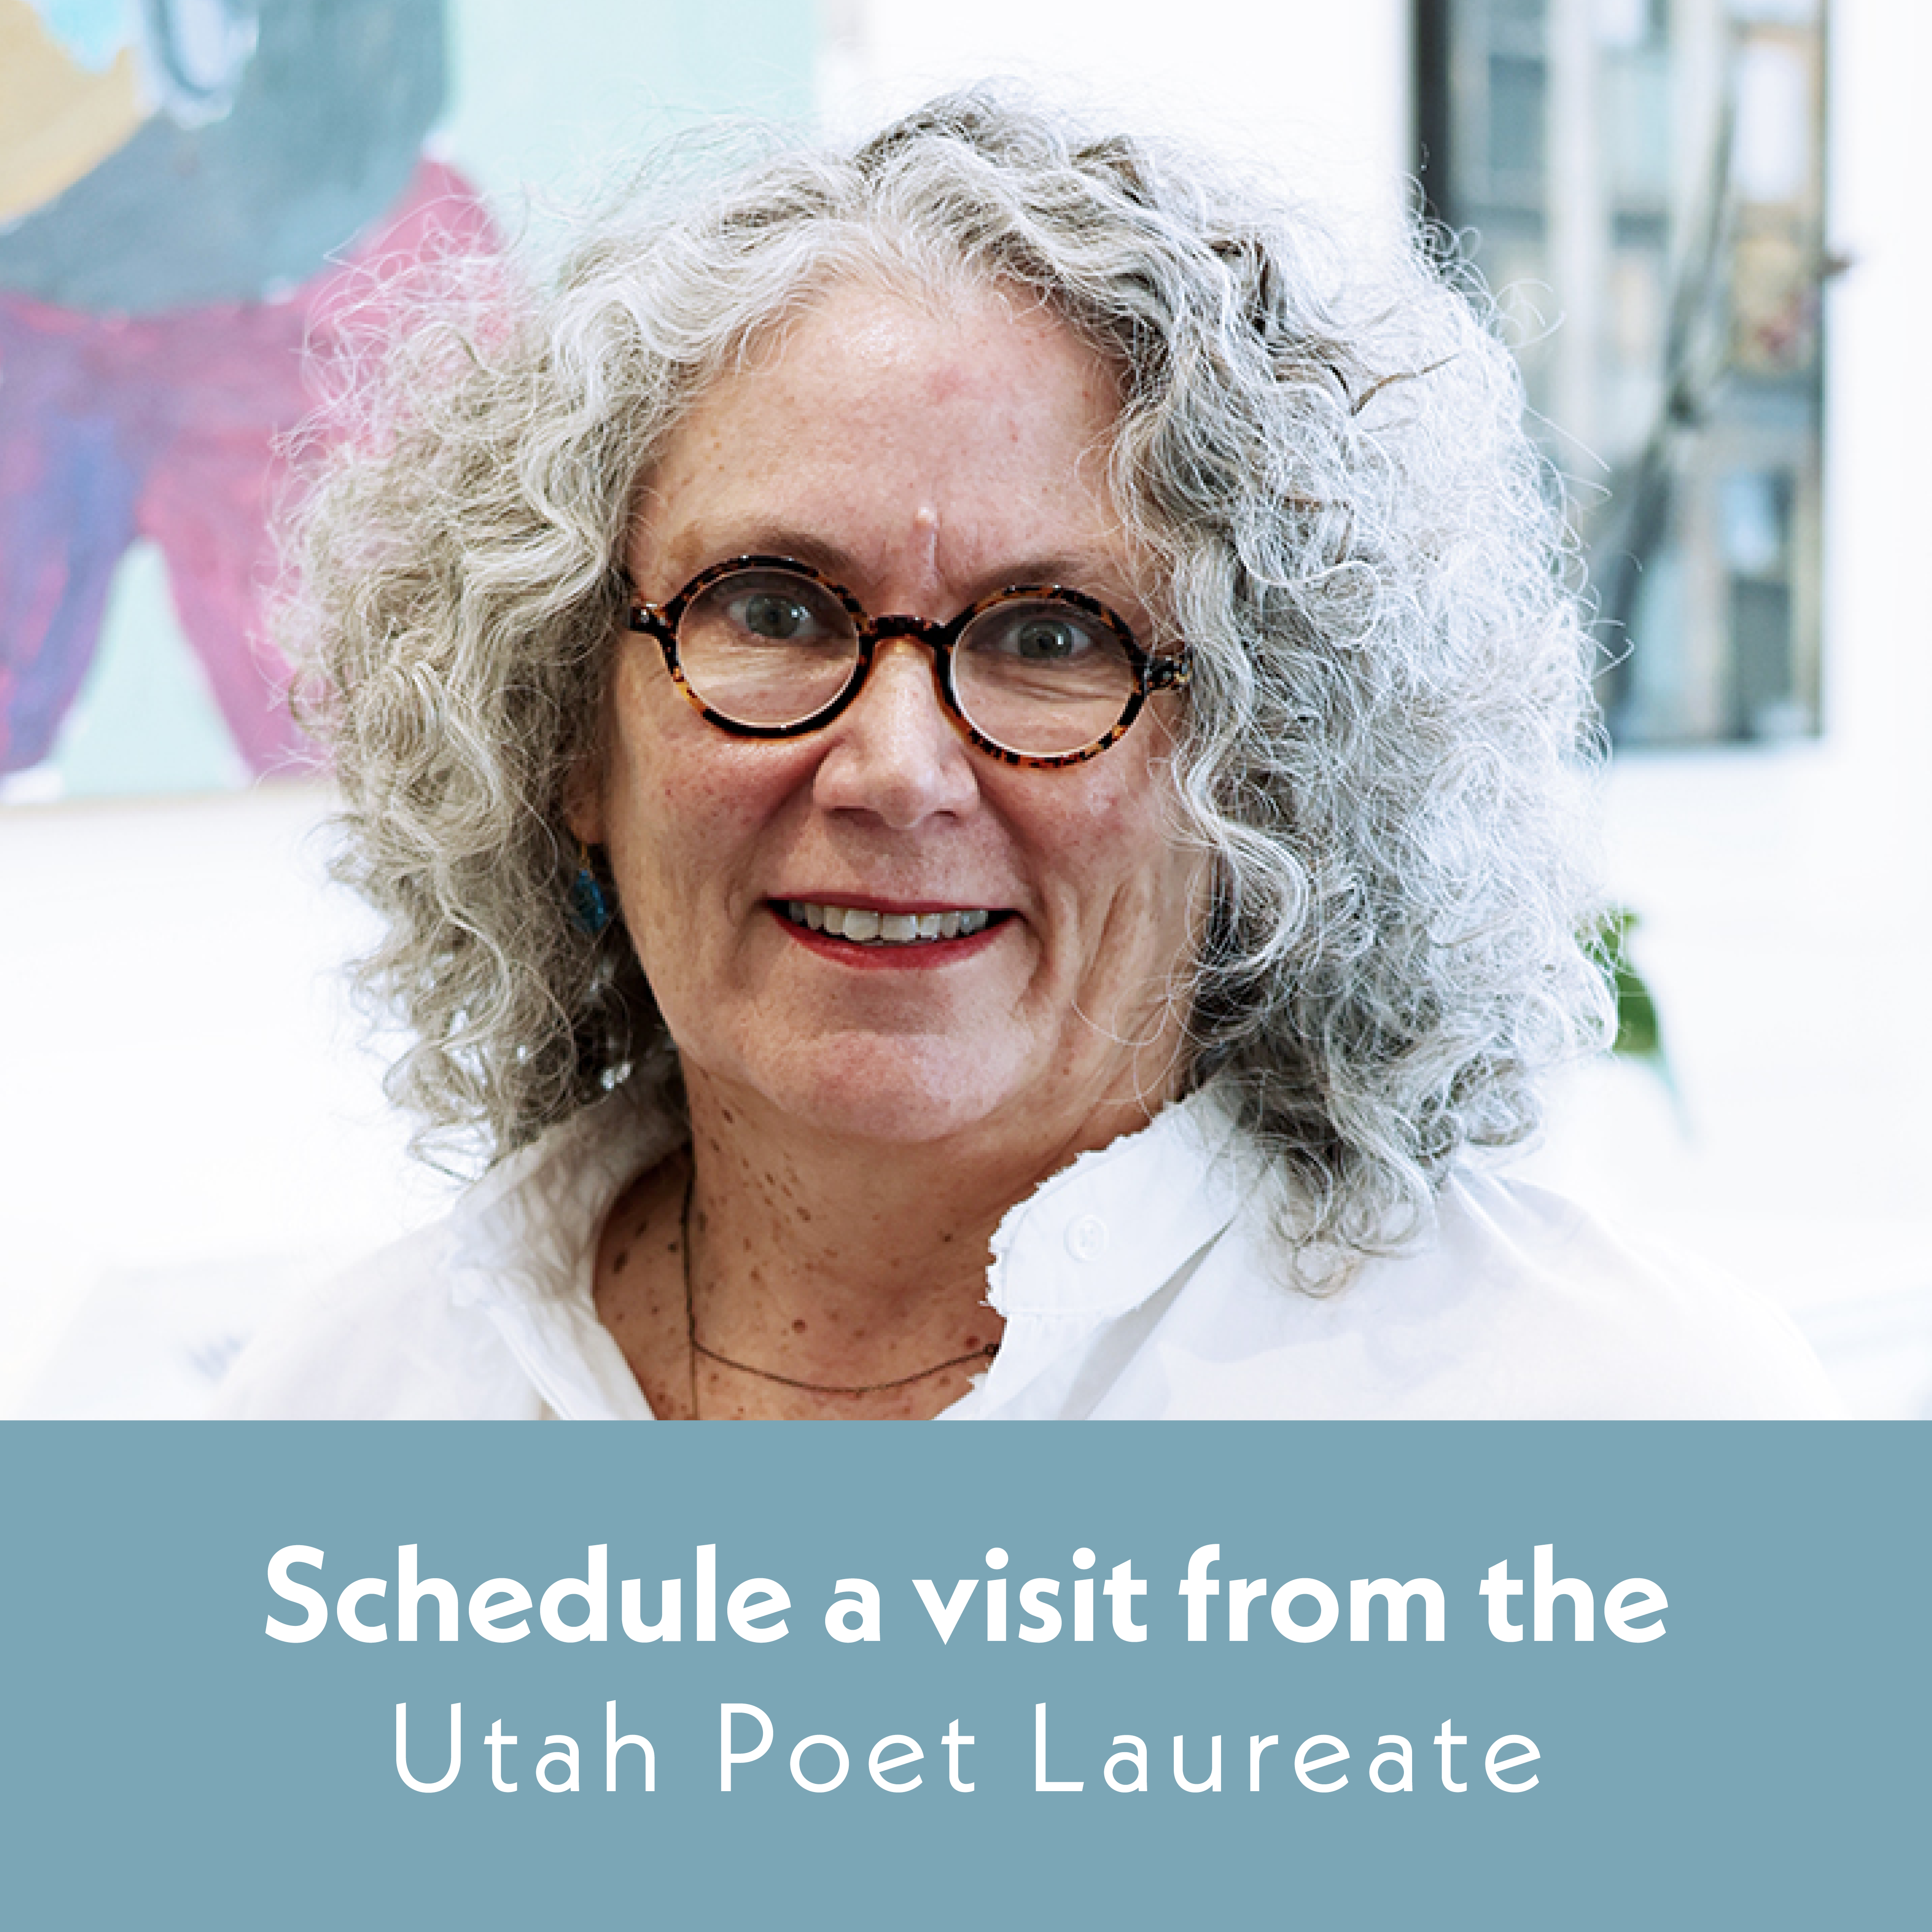 Schedule a visit from the Utah Poet Laureate.